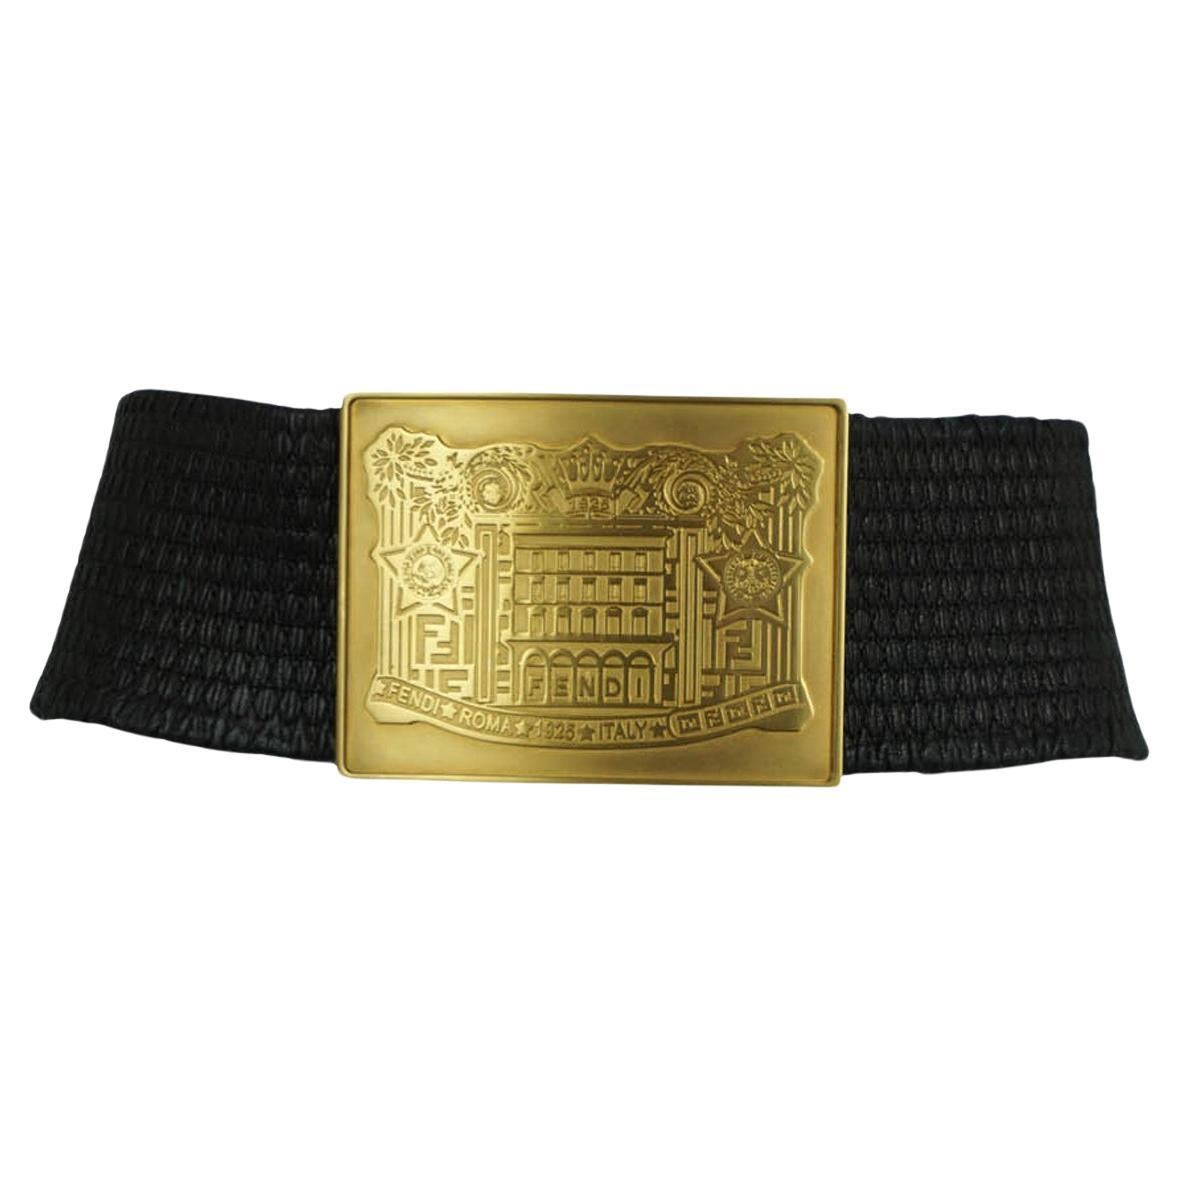 Where can you buy a Fendi belt?